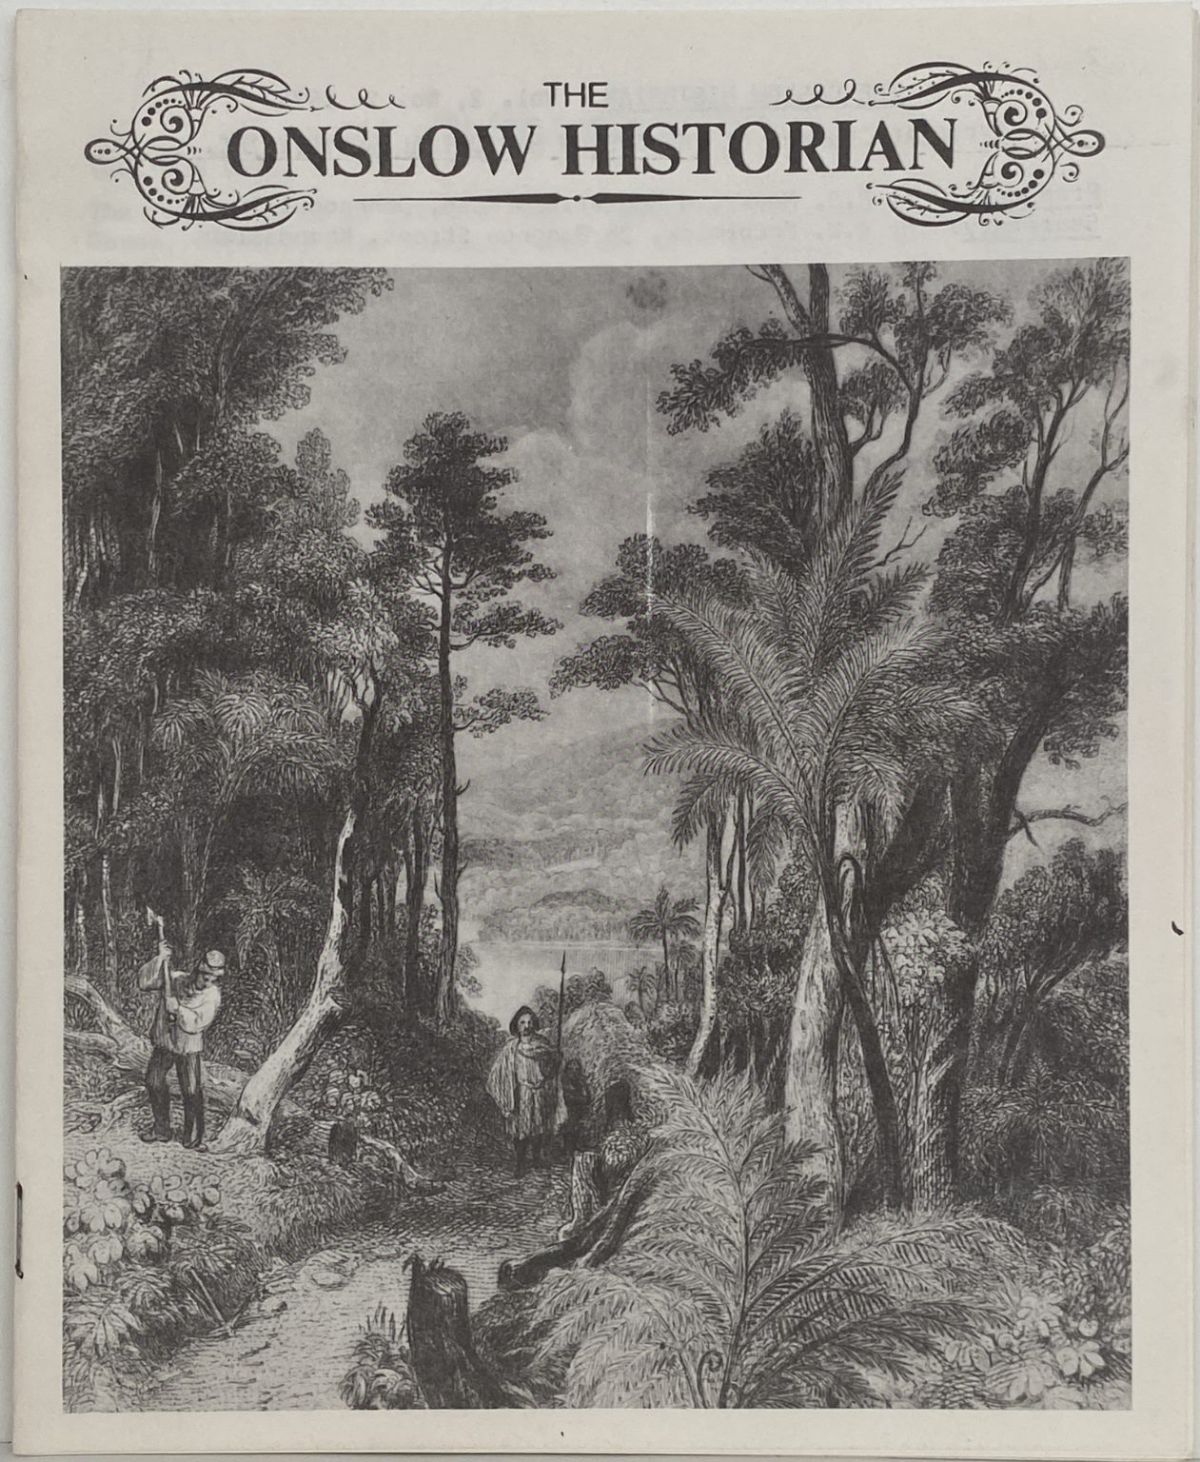 THE ONSLOW HISTORIAN: Vol. 2 - No. 2, 1972